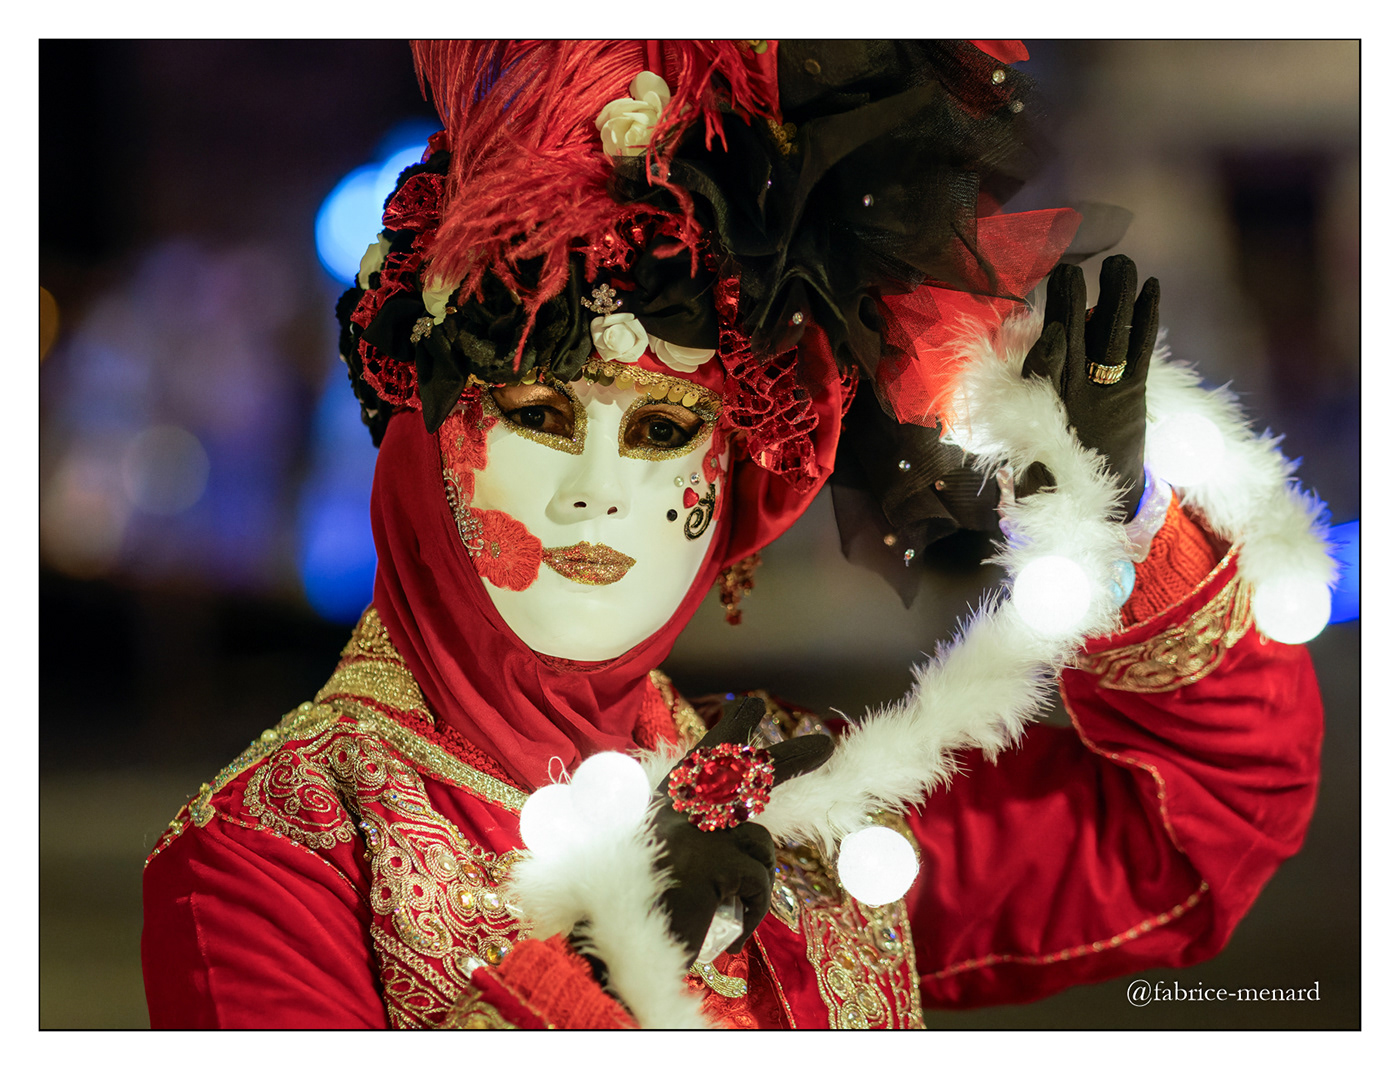 Carnaval Masque Masques loup portrait costume costumes Carnaval vénitien fête de rue remiremont